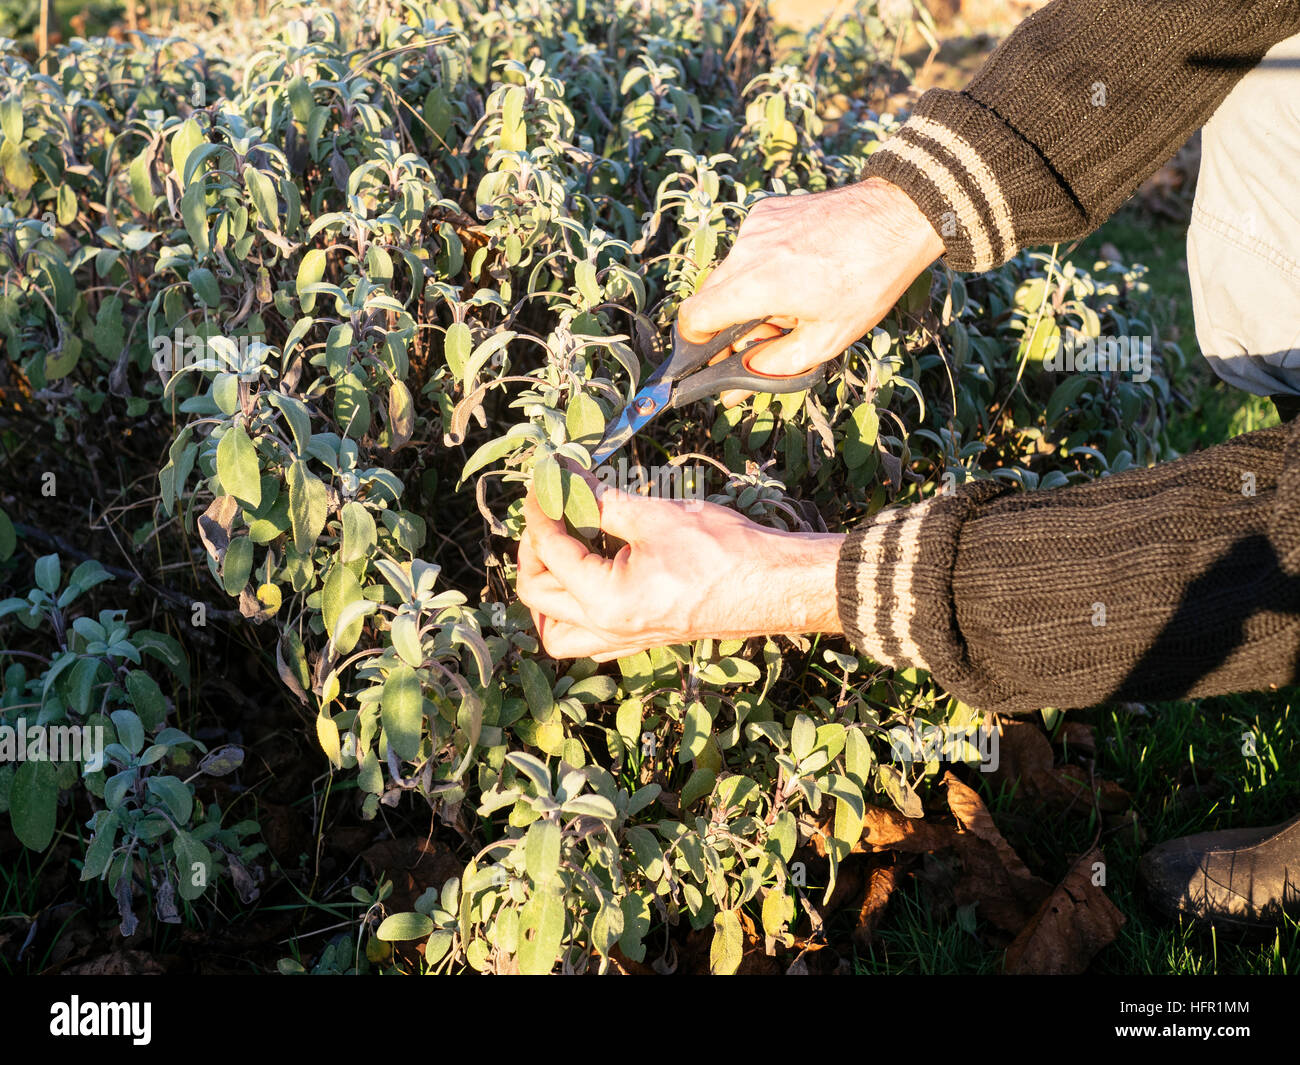 Jardinero cosechar sage (Salvia officinalis) deja en un jardín de hierbas para hacer té de salvia fresca. Foto de stock